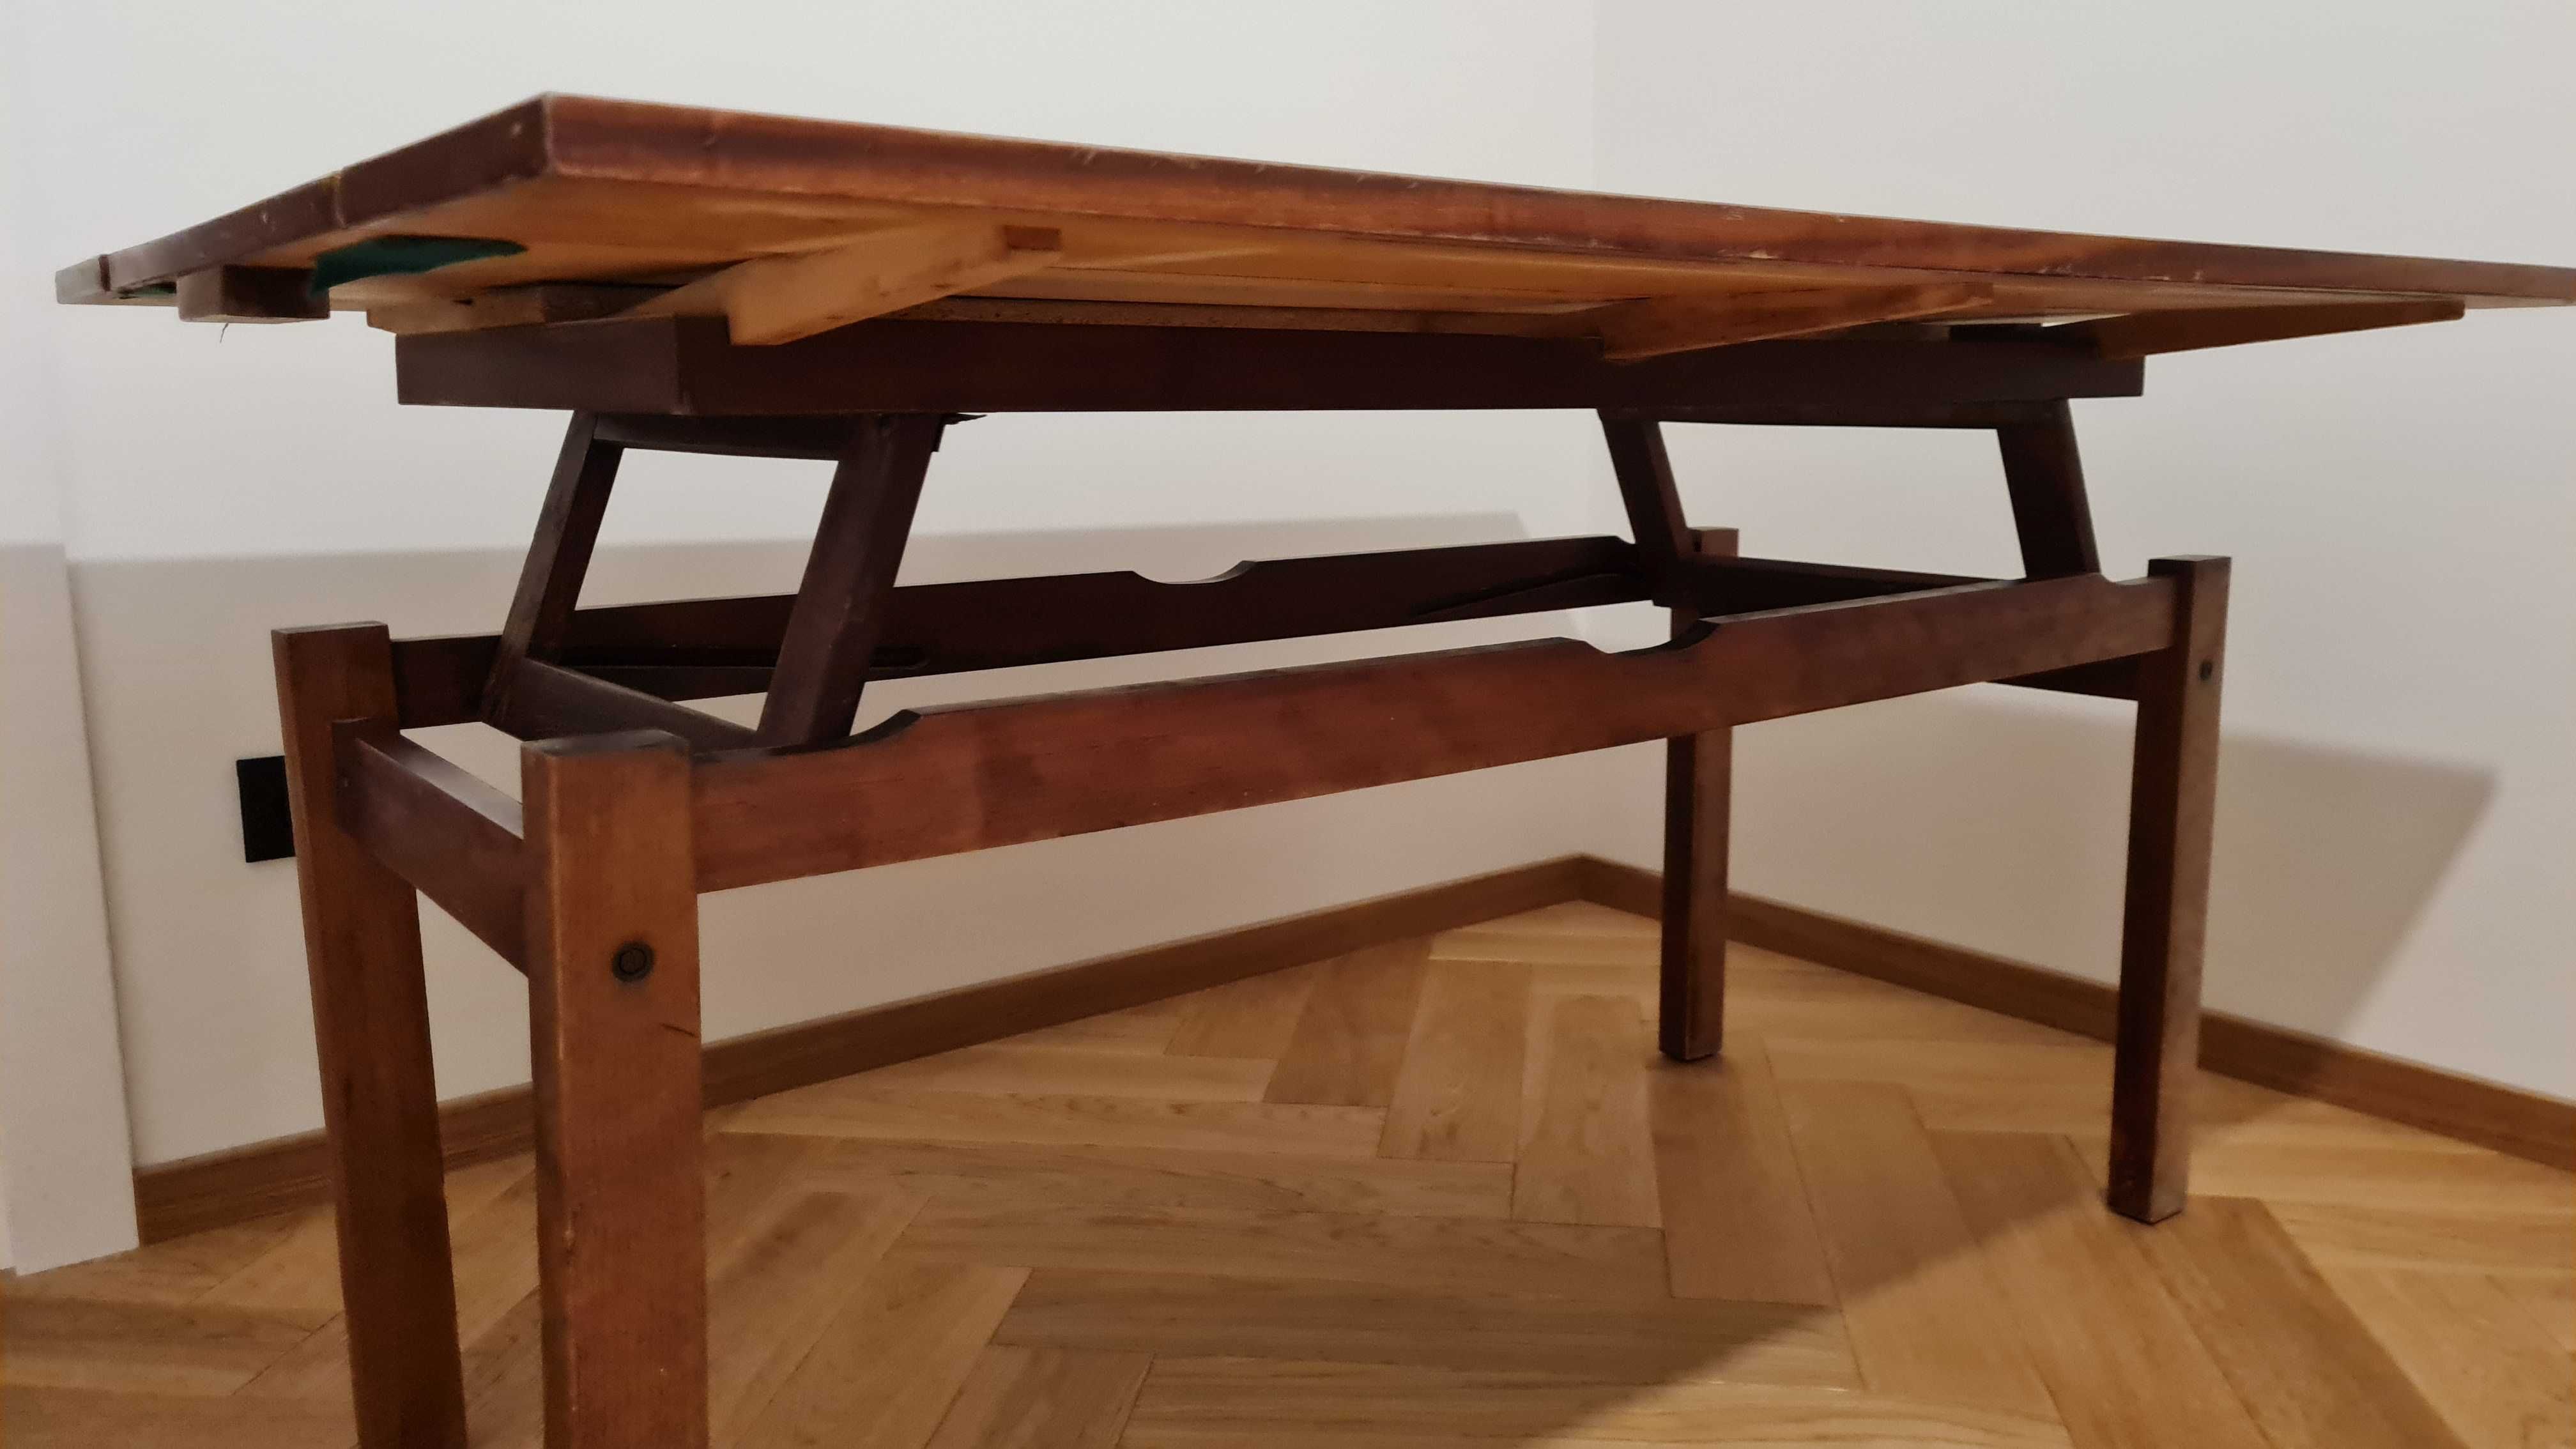 Stół składany, ława wysoki połysk 136 x 100